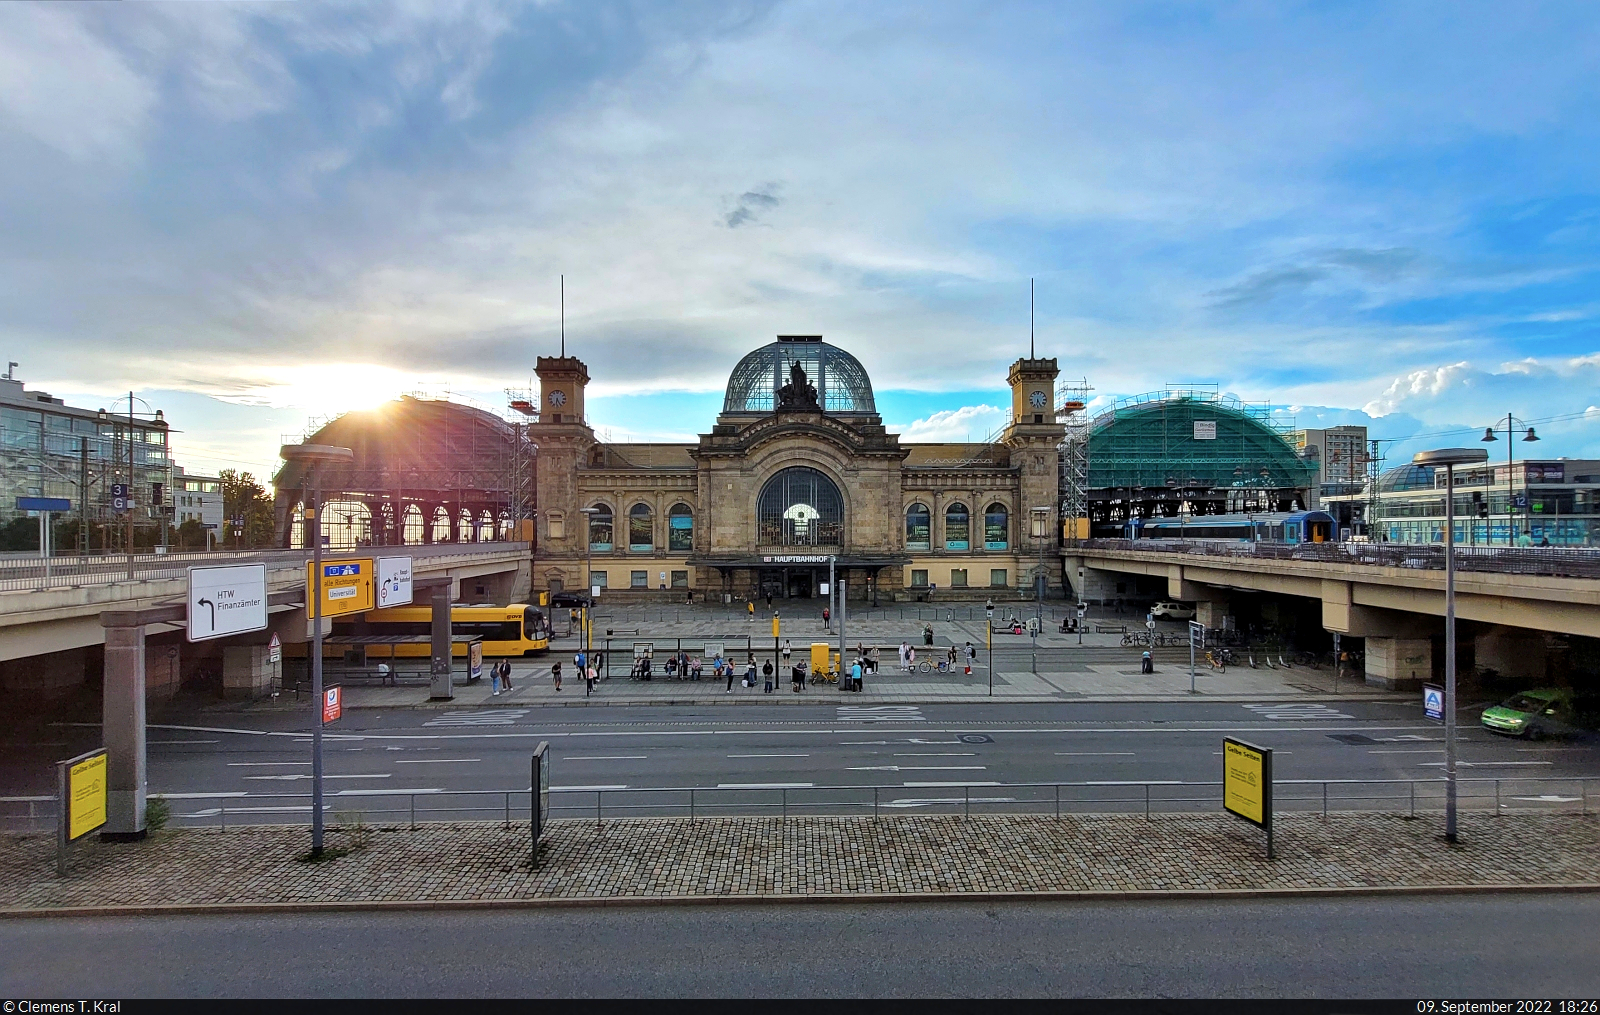 Nach vielen Regenstunden und einigen Querelen mit dem EC 172 erhebt sich die Abendsonne über den Dresdner Hauptbahnhof. Die Etappe von Wien (A) in die Heimat verlief leider nicht so störungsfrei wie alle anderen Zugfahrten in Südosteuropa. Am Ende war ich zwei Stunden später da als geplant und hatte, wie inzwischen gewohnt, eine Rückerstattung bei der DB beantragt.
<a href= https://www.bahnbilder.de/bild/deutschland~sonstiges~bahnschilder-werbeplakate-und-ahnliches/1323742/beginn-einer-reise-gen-tschechien-vorher.html  target= _blank >Auf diesem Bild aus Dresden-Neustadt</a> geht es zurück an den Anfang der Reise.

🕓 9.9.2022 | 18:26 Uhr